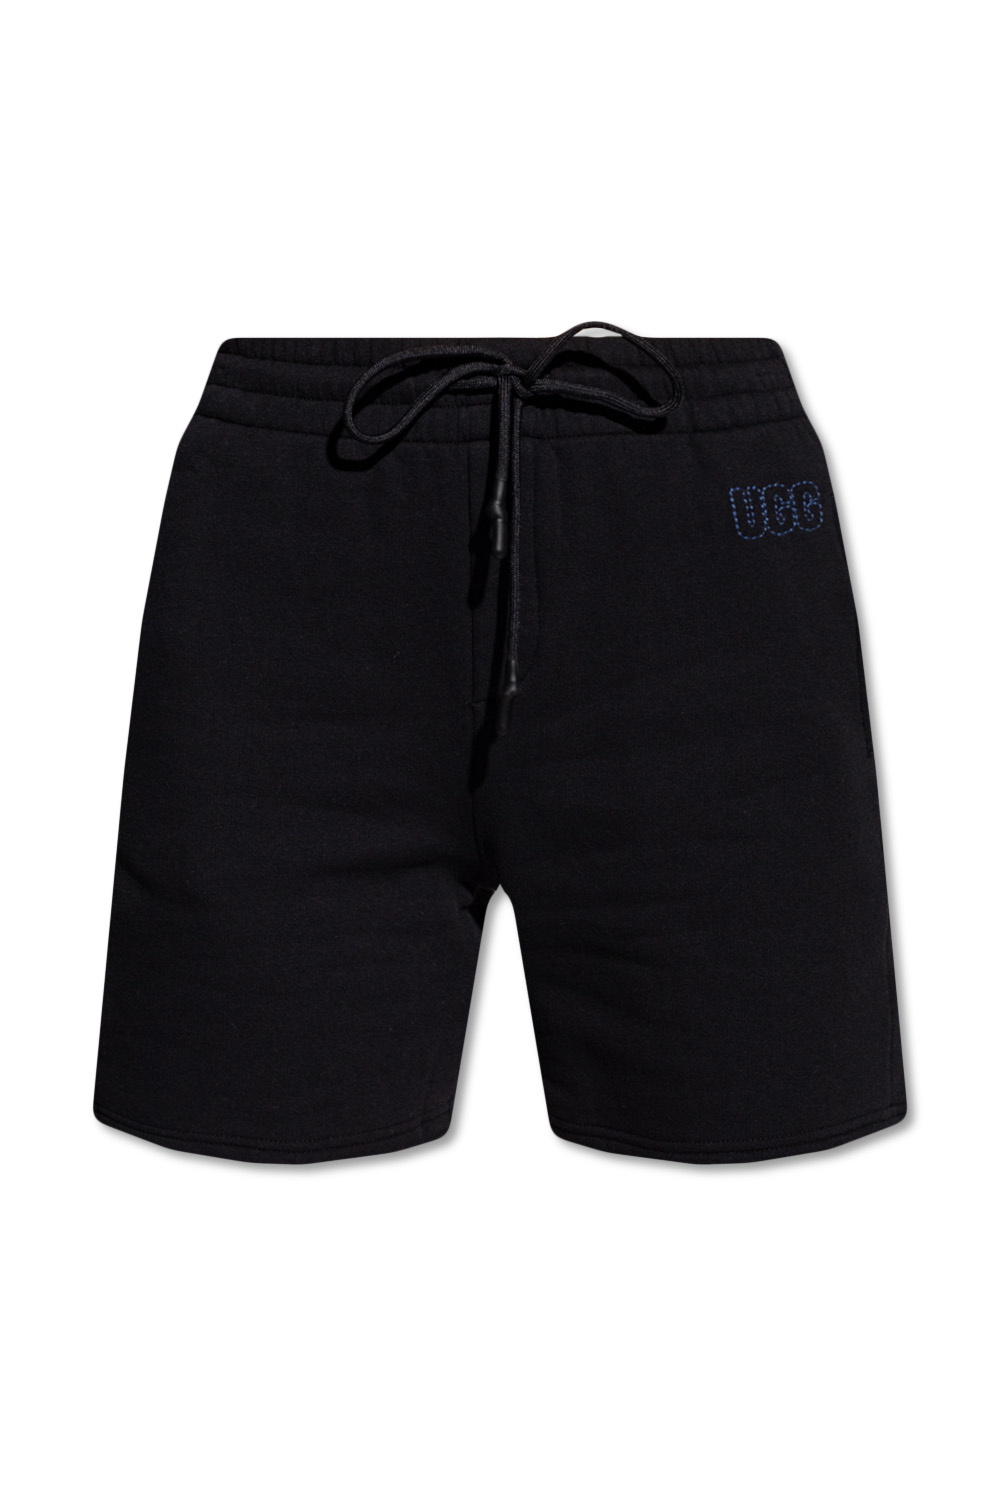 UGG ‘Chrissy’ shorts